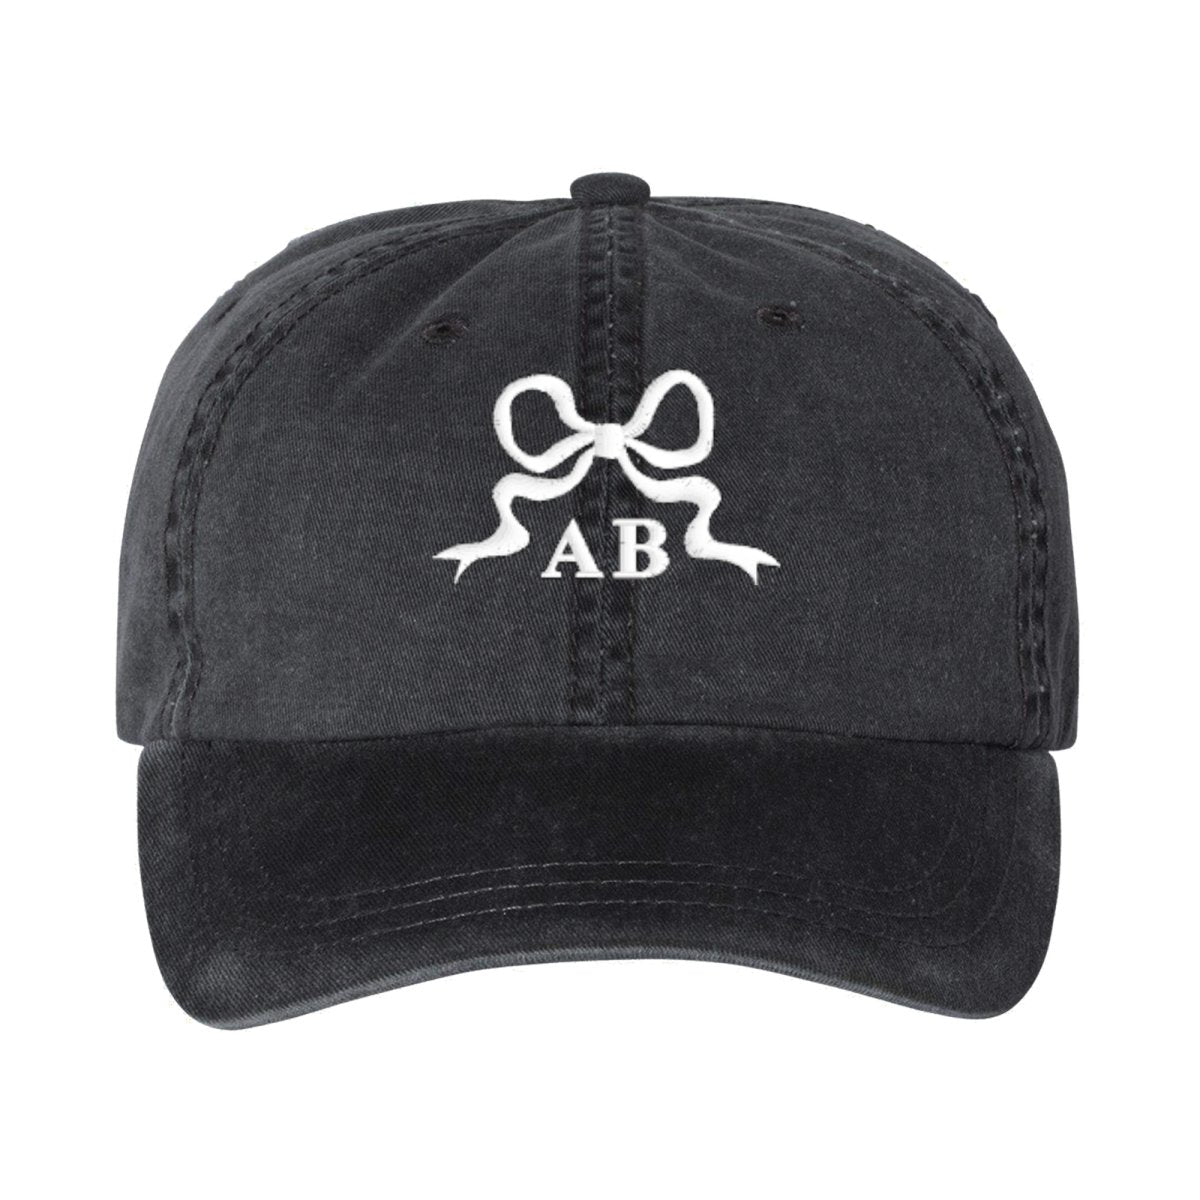 Initialed 'Tiny Bow' Baseball Hat - United Monograms